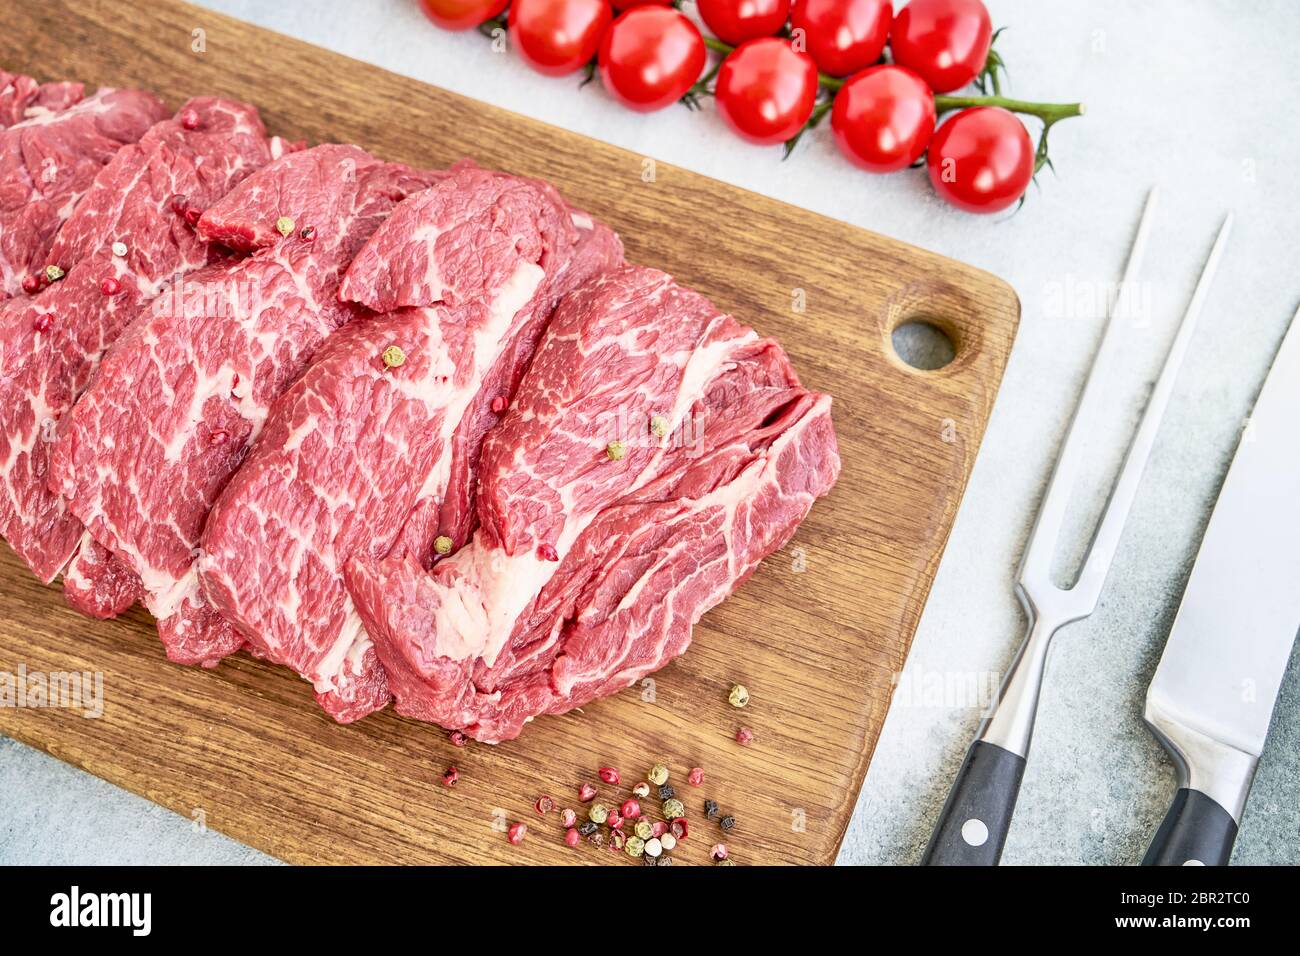 Steaks de bœuf frais crus avec poivre et tomates sur la planche à découper Swooden. Vue de dessus Banque D'Images